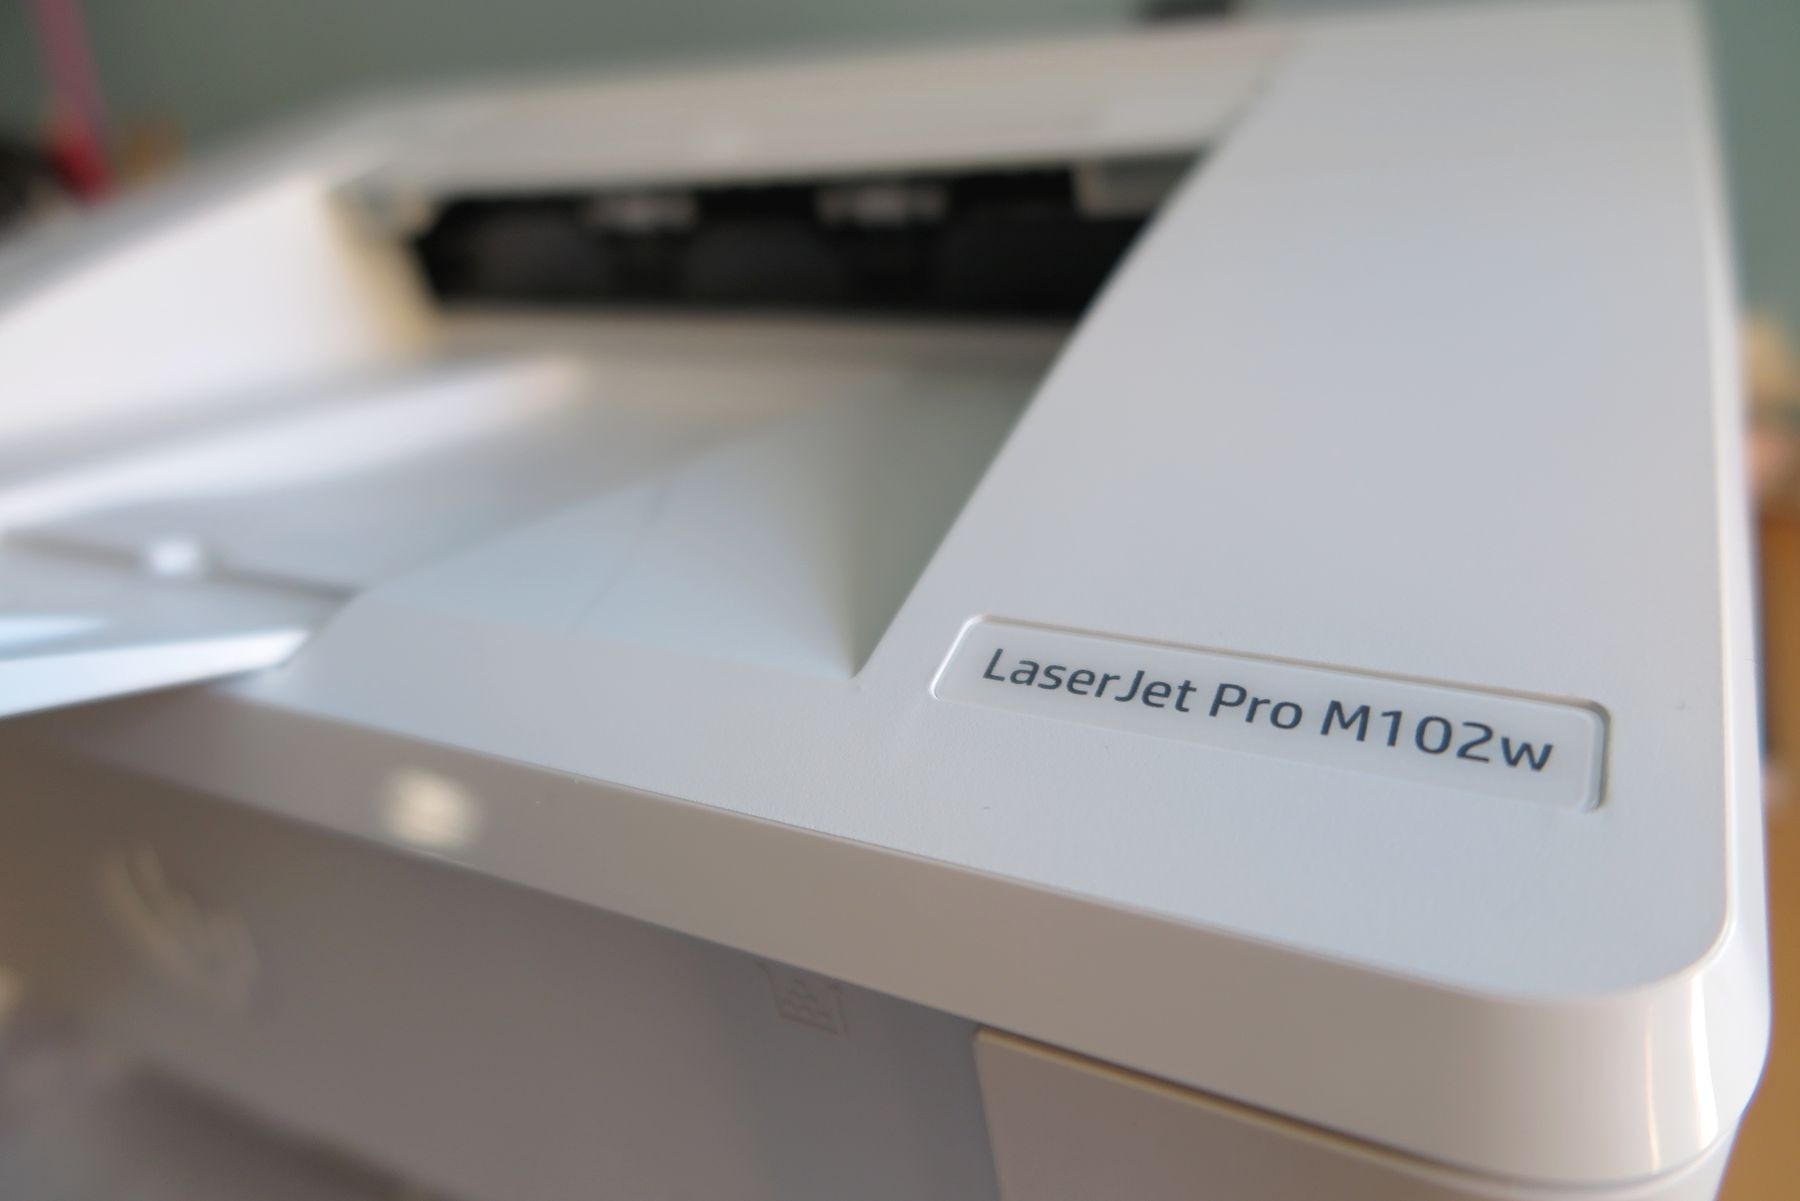 HP LaserJet Pro M102w detakke nombre